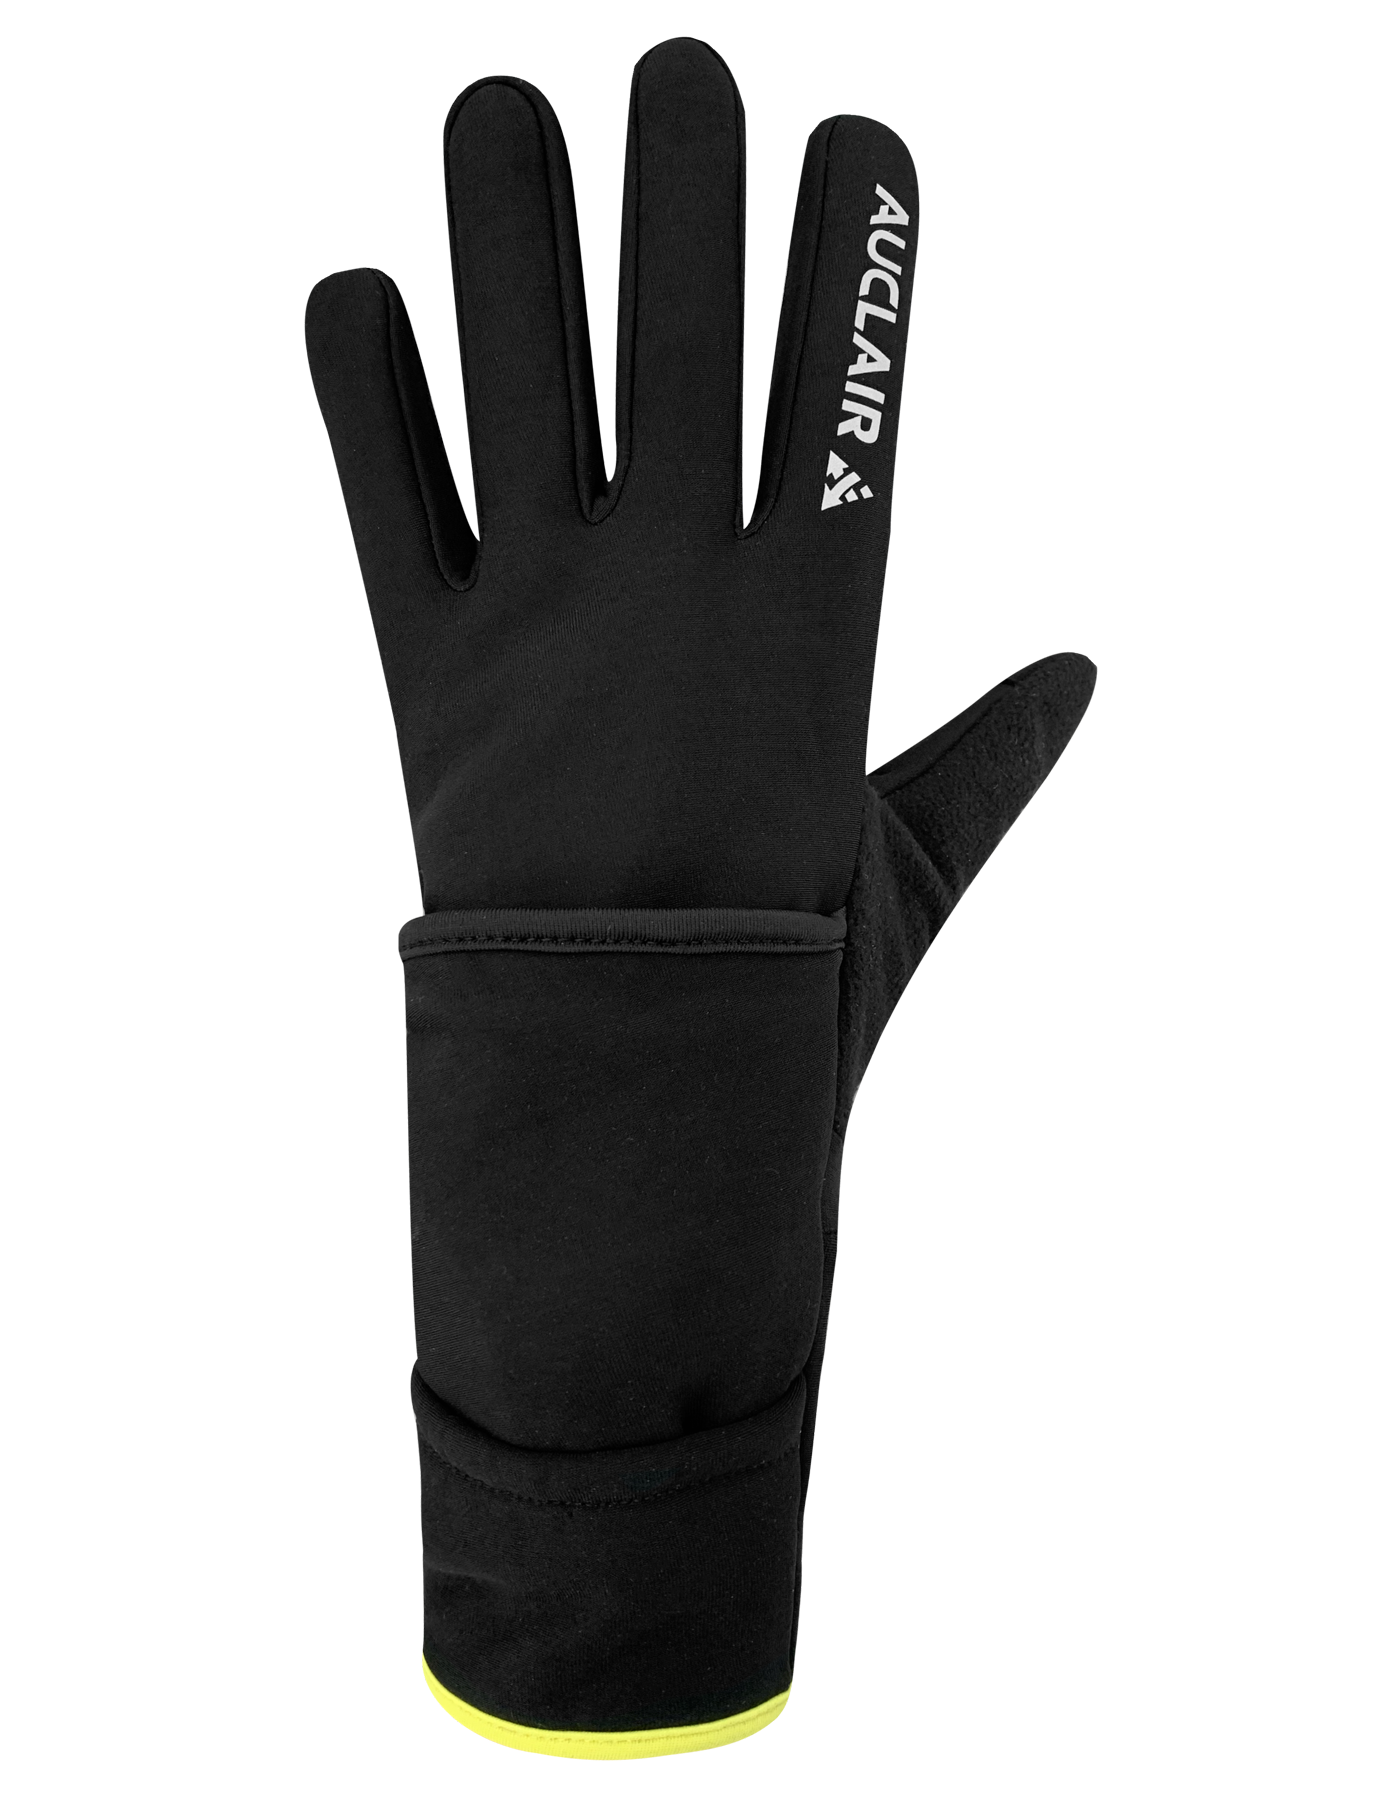 VO2 Max Gloves - Unisex